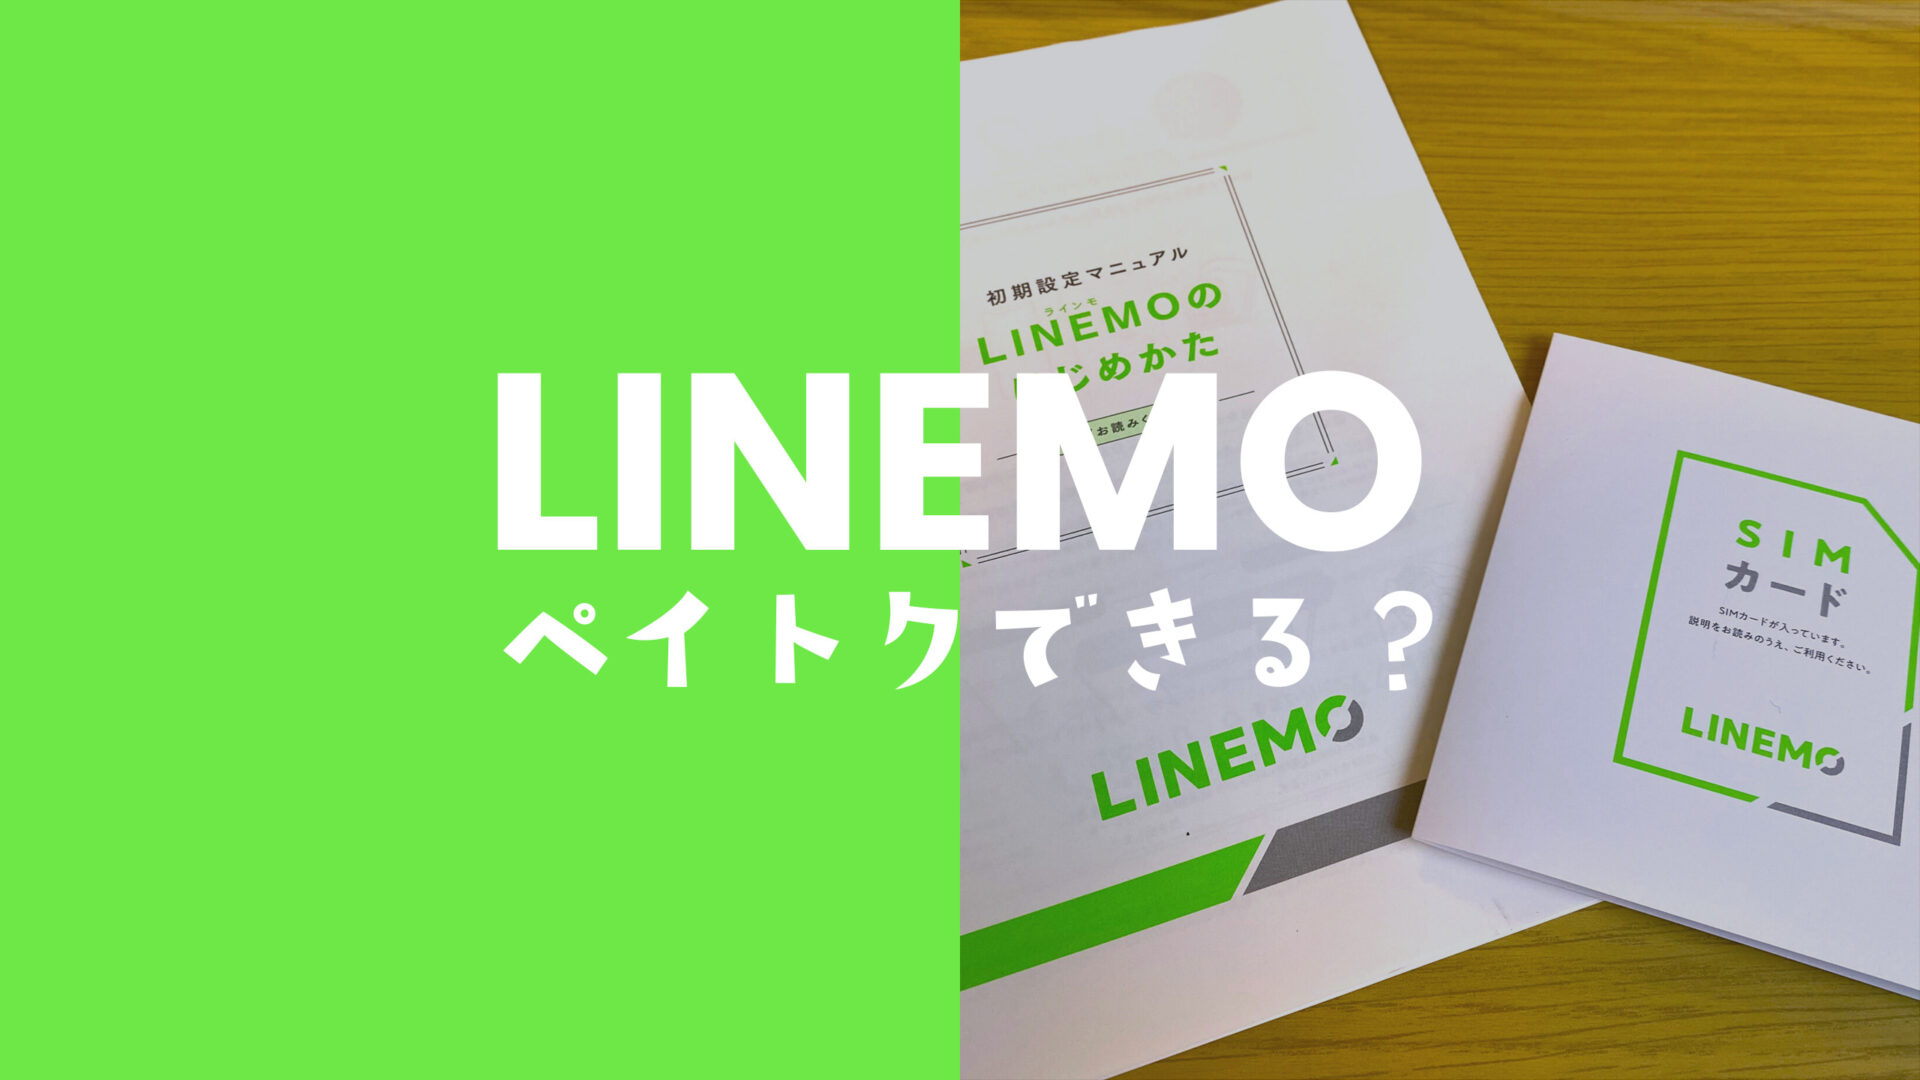 ペイトクはLINEMO(ラインモ)ではできない&対象外だが独自キャンペーンが強力。のサムネイル画像